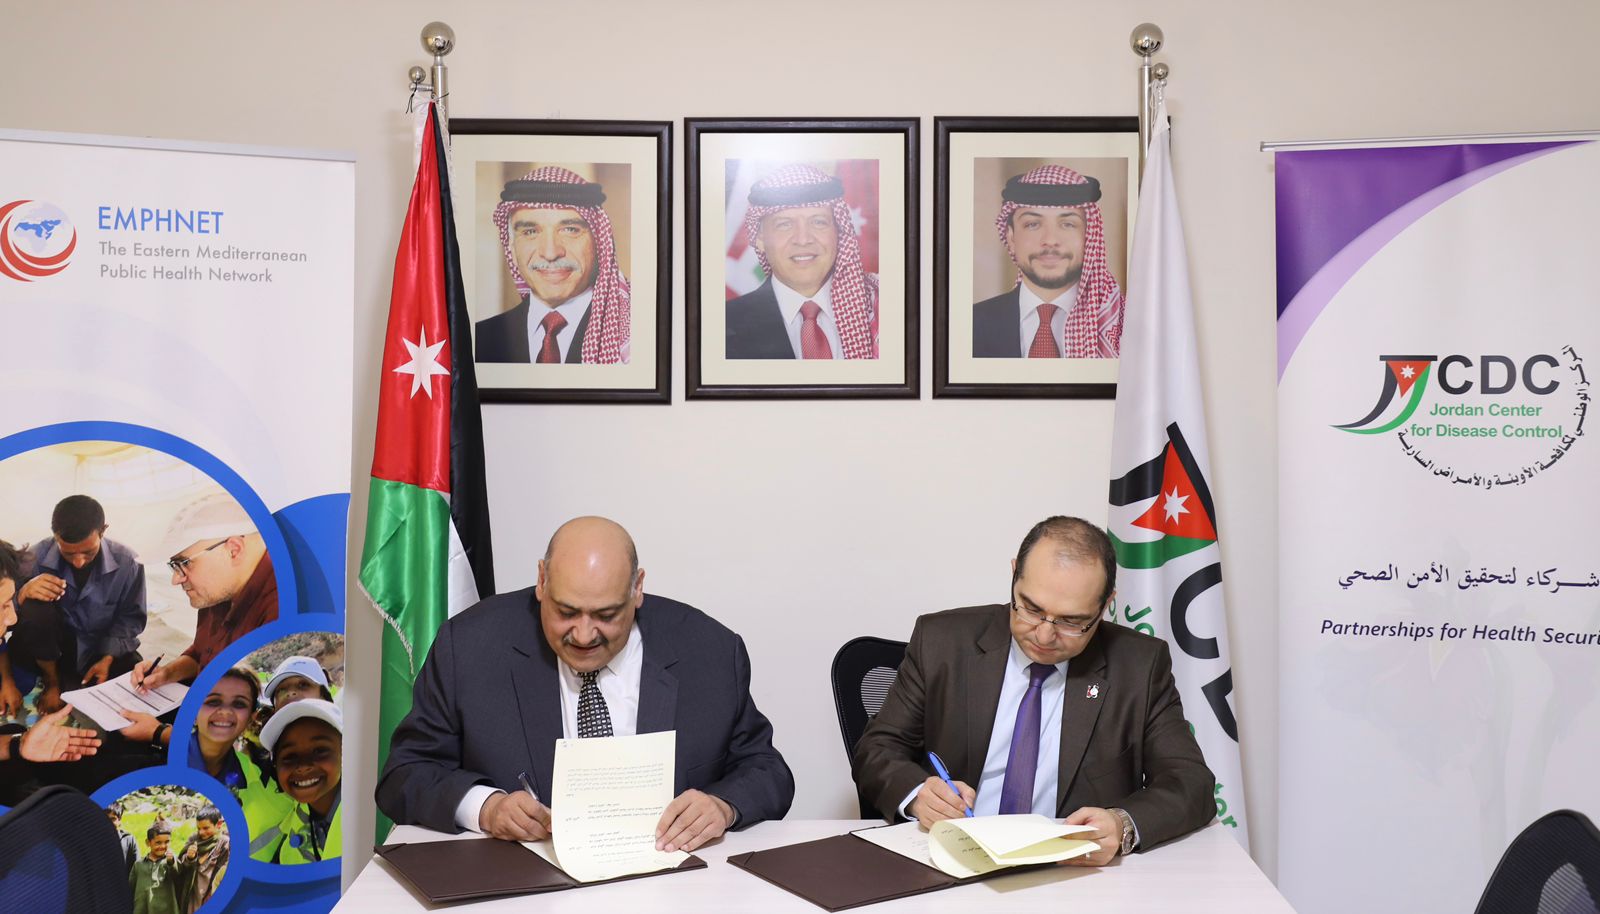 اتفاقية تعاون بين الشبكة الشرق أوسطية للصحة المجتمعية والمركز الوطني لمكافحة الأوبئة والأمراض السارية - الأردن